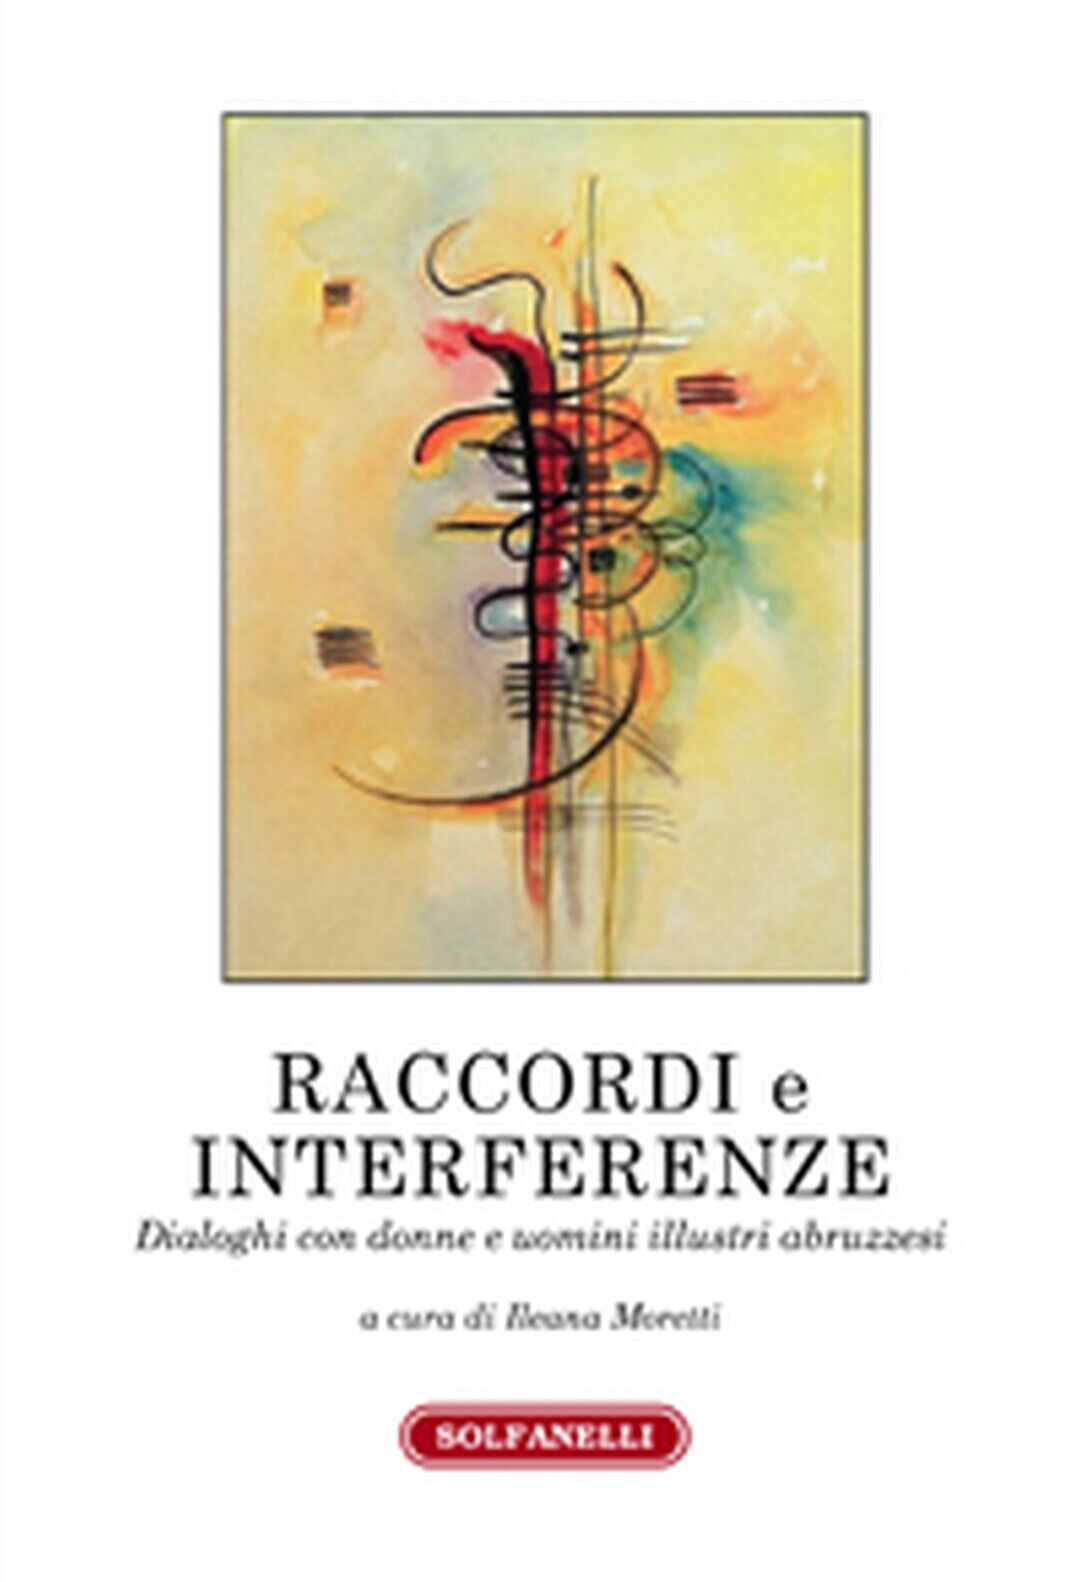 RACCORDI E INTERFERENZE  di Ileana Moretti (a Cura Di),  Solfanelli Edizioni